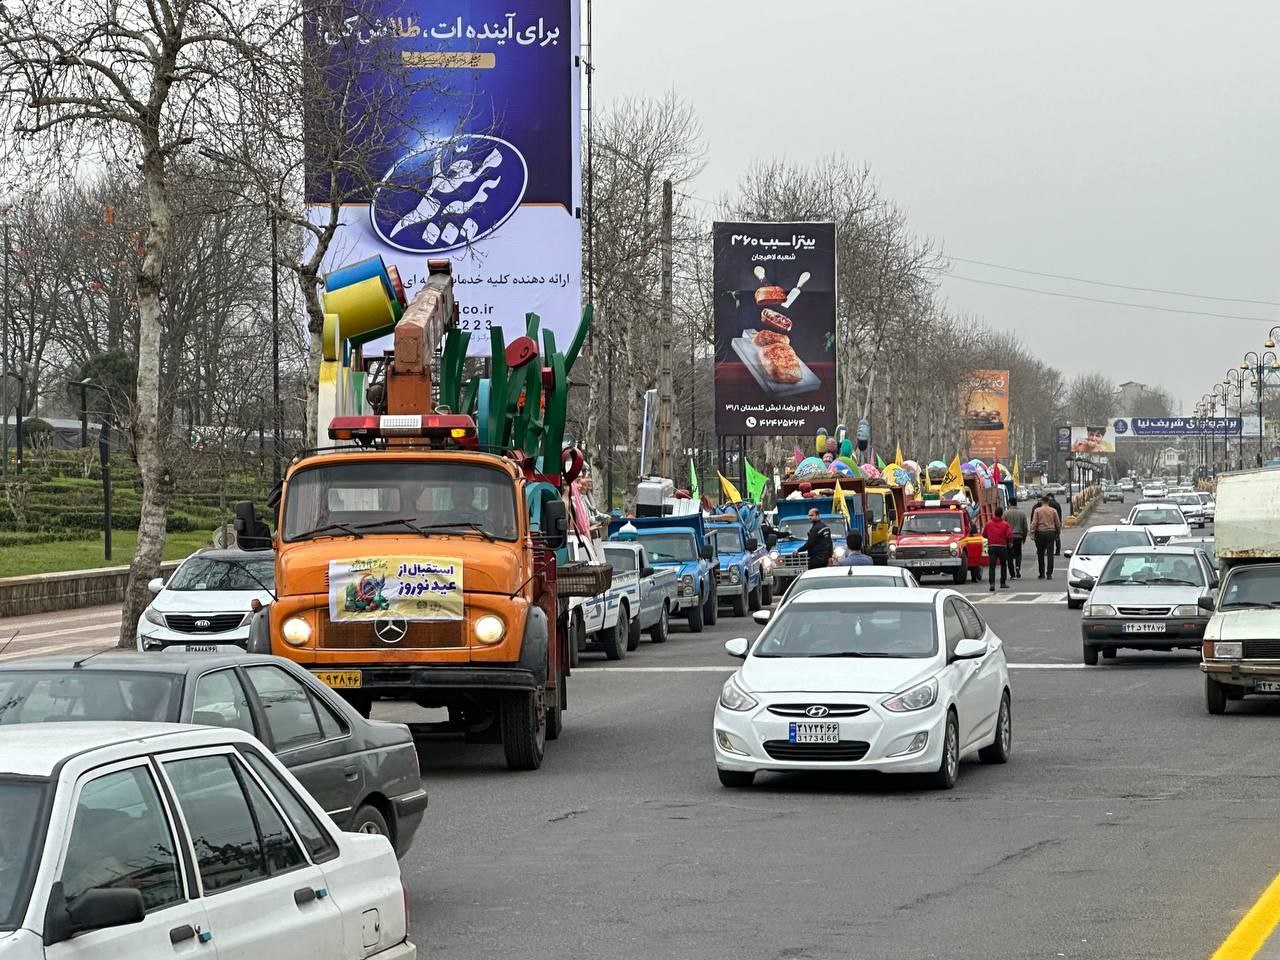 جشن های نوروزی با حرکت کاروان المان های نوروزی شهرداری لاهیجان آغاز شد